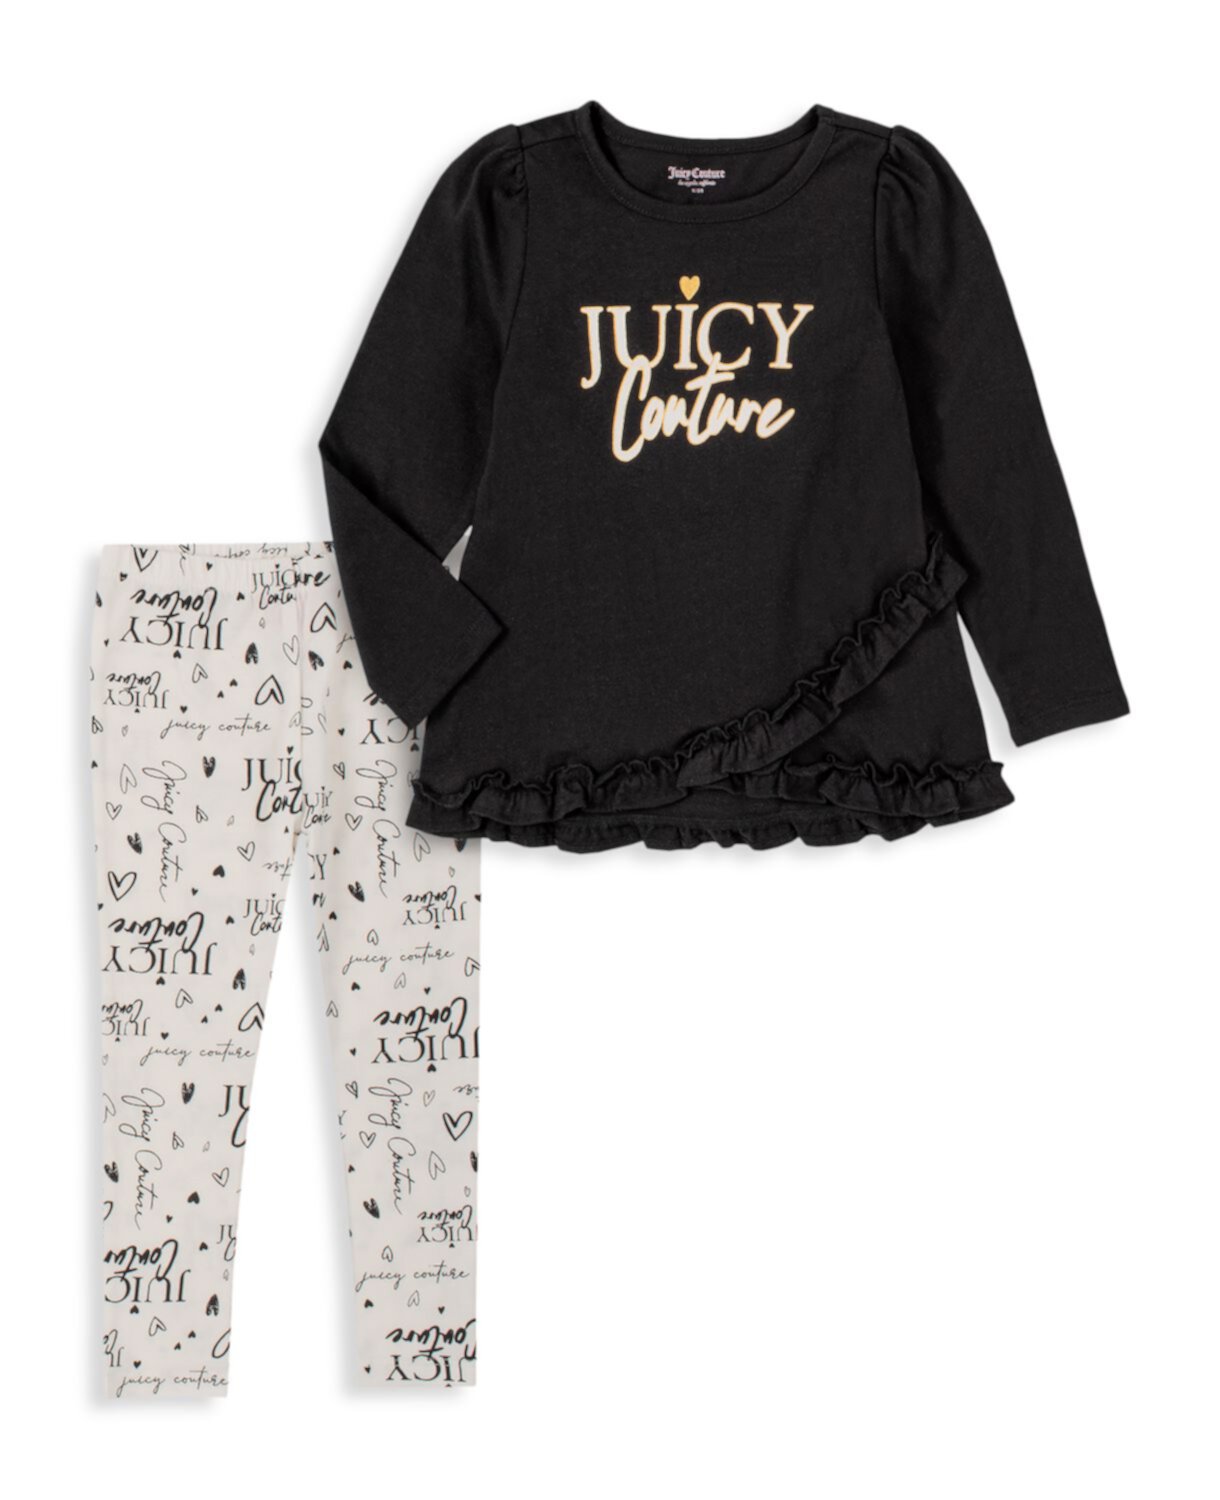 Двухкомпонентный топ с логотипом и логотипом Little Girl; Комплект леггинсов Juicy Couture